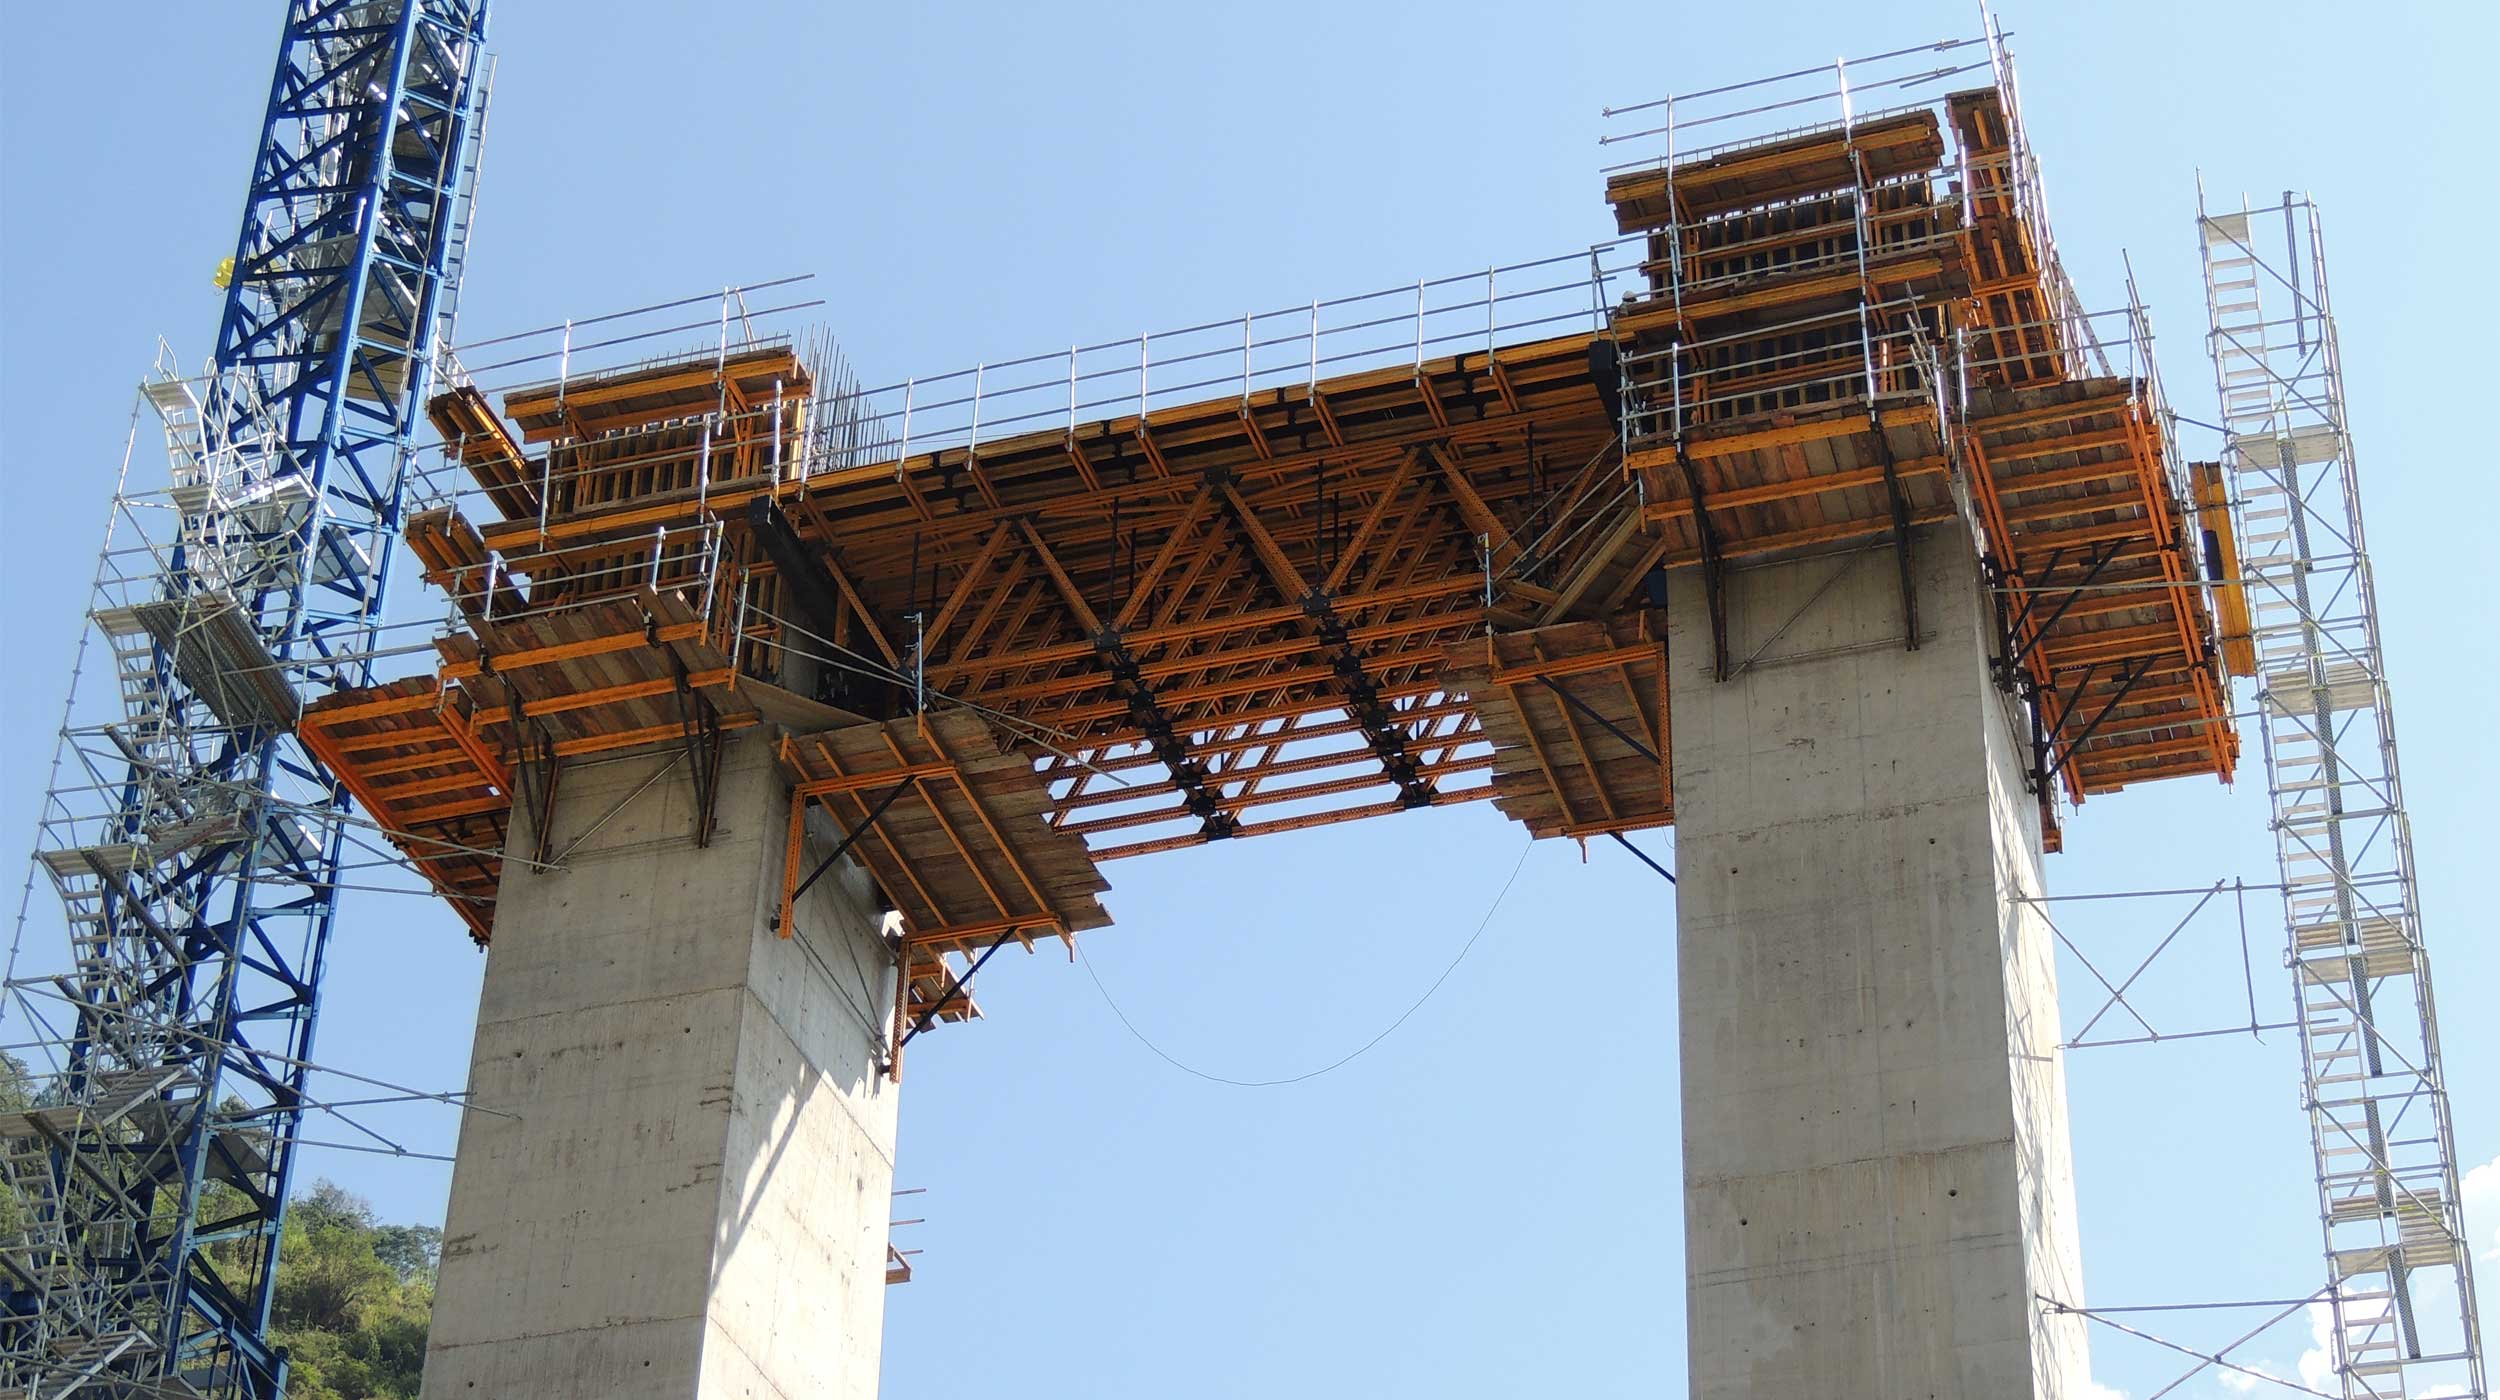 El puente atirantado Hisgaura, con 653 m de longitud y un vano central de 400 m, se convertirá en 2018 en el más largo de Sudamérica de su tipología.